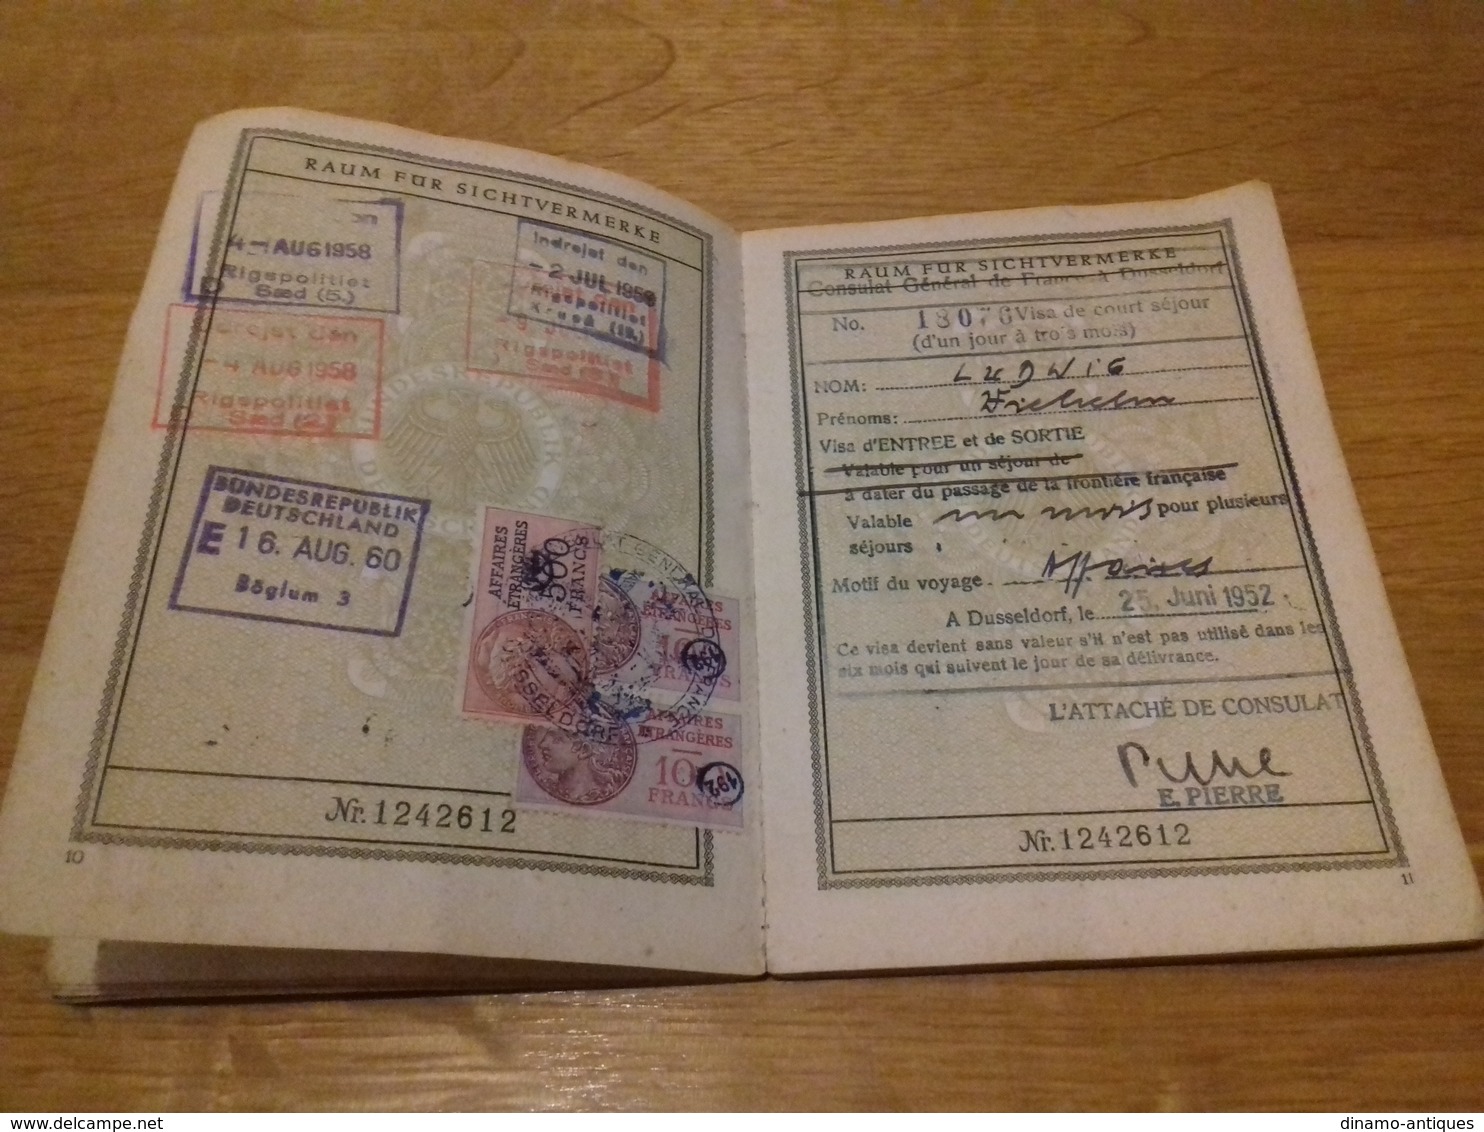 1951 Germany reisepass passport reisepass - visas: France, Belgium, Denmark border stamps - revenues